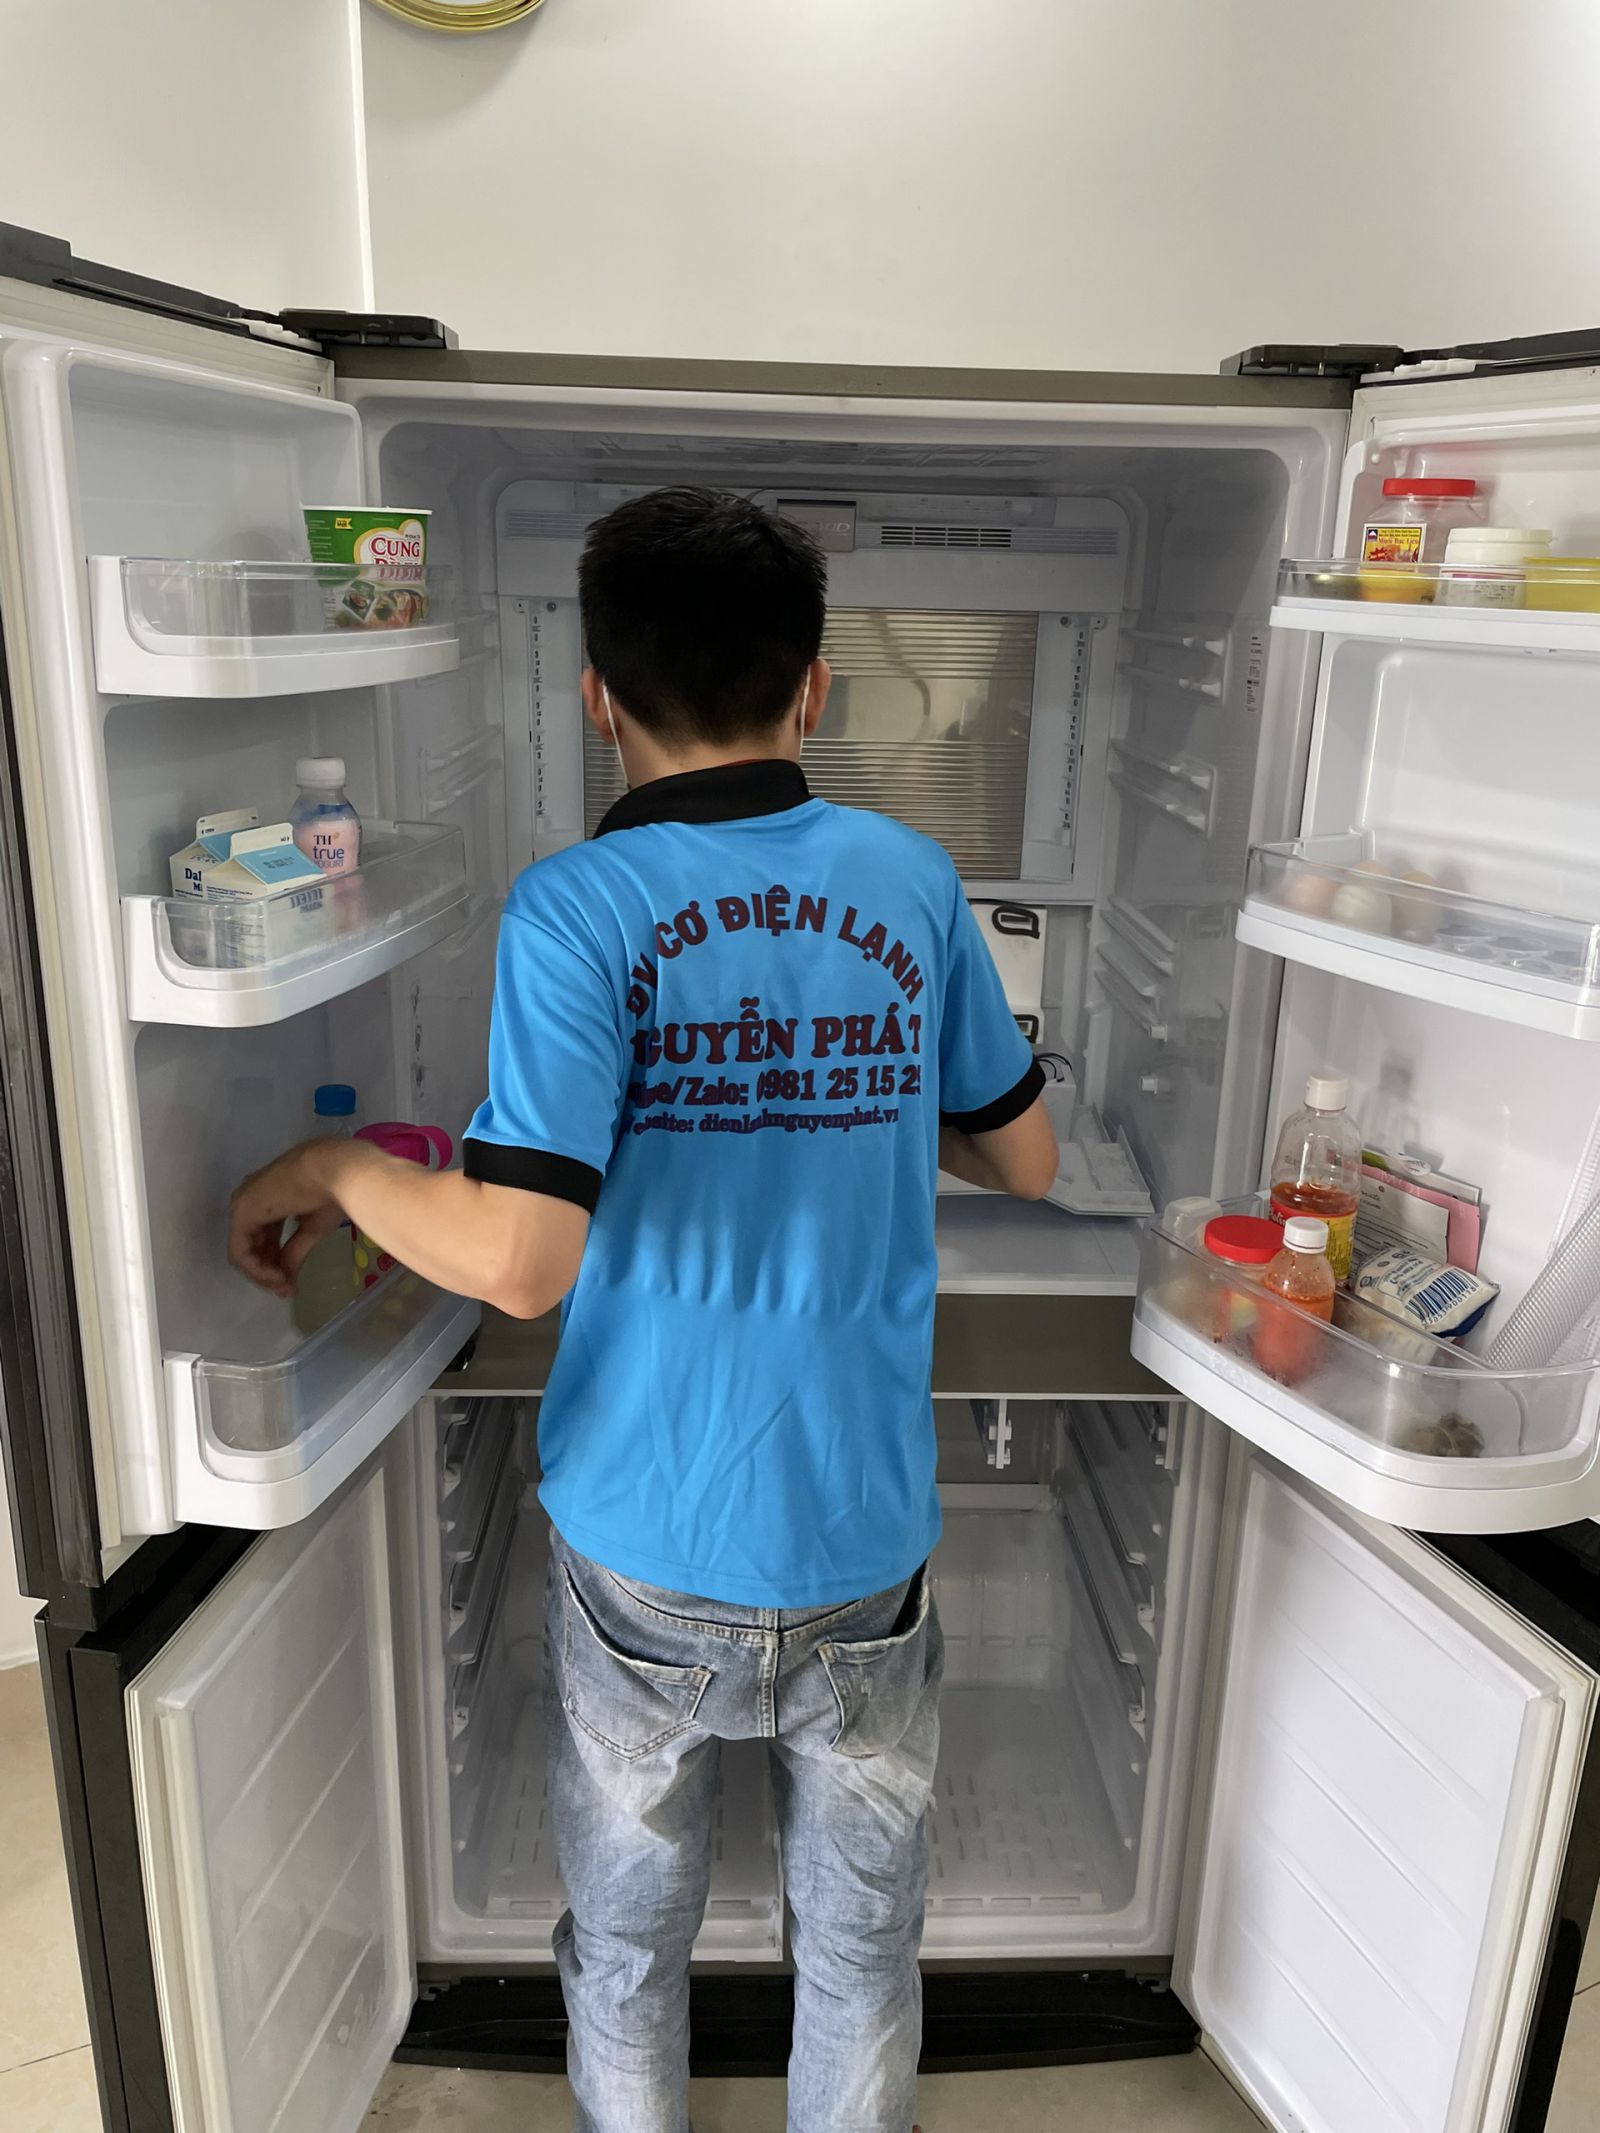 Sửa chữa tủ lạnh Điện lạnh Nguyễn Phát